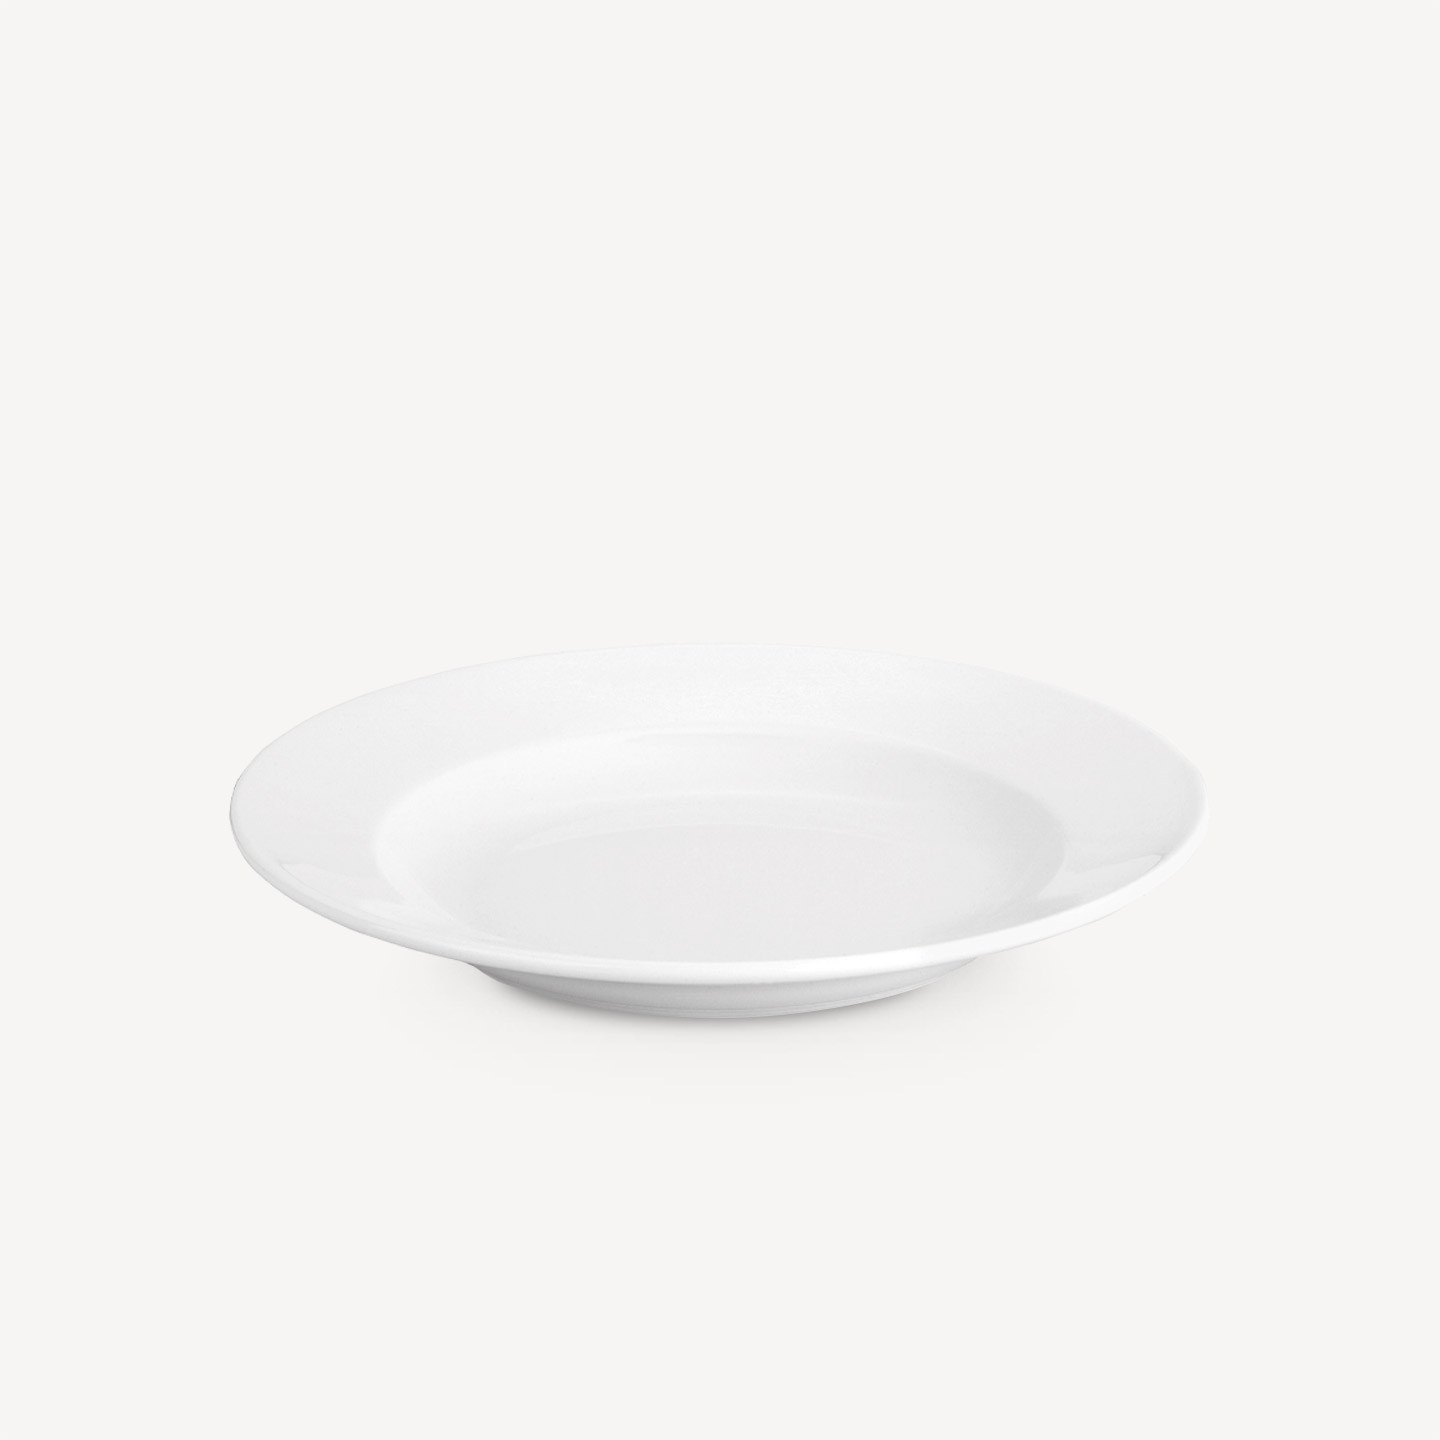 Achat / vente assiette creuse porcelaine - vaisselle porcelaine - bastide  diffusion